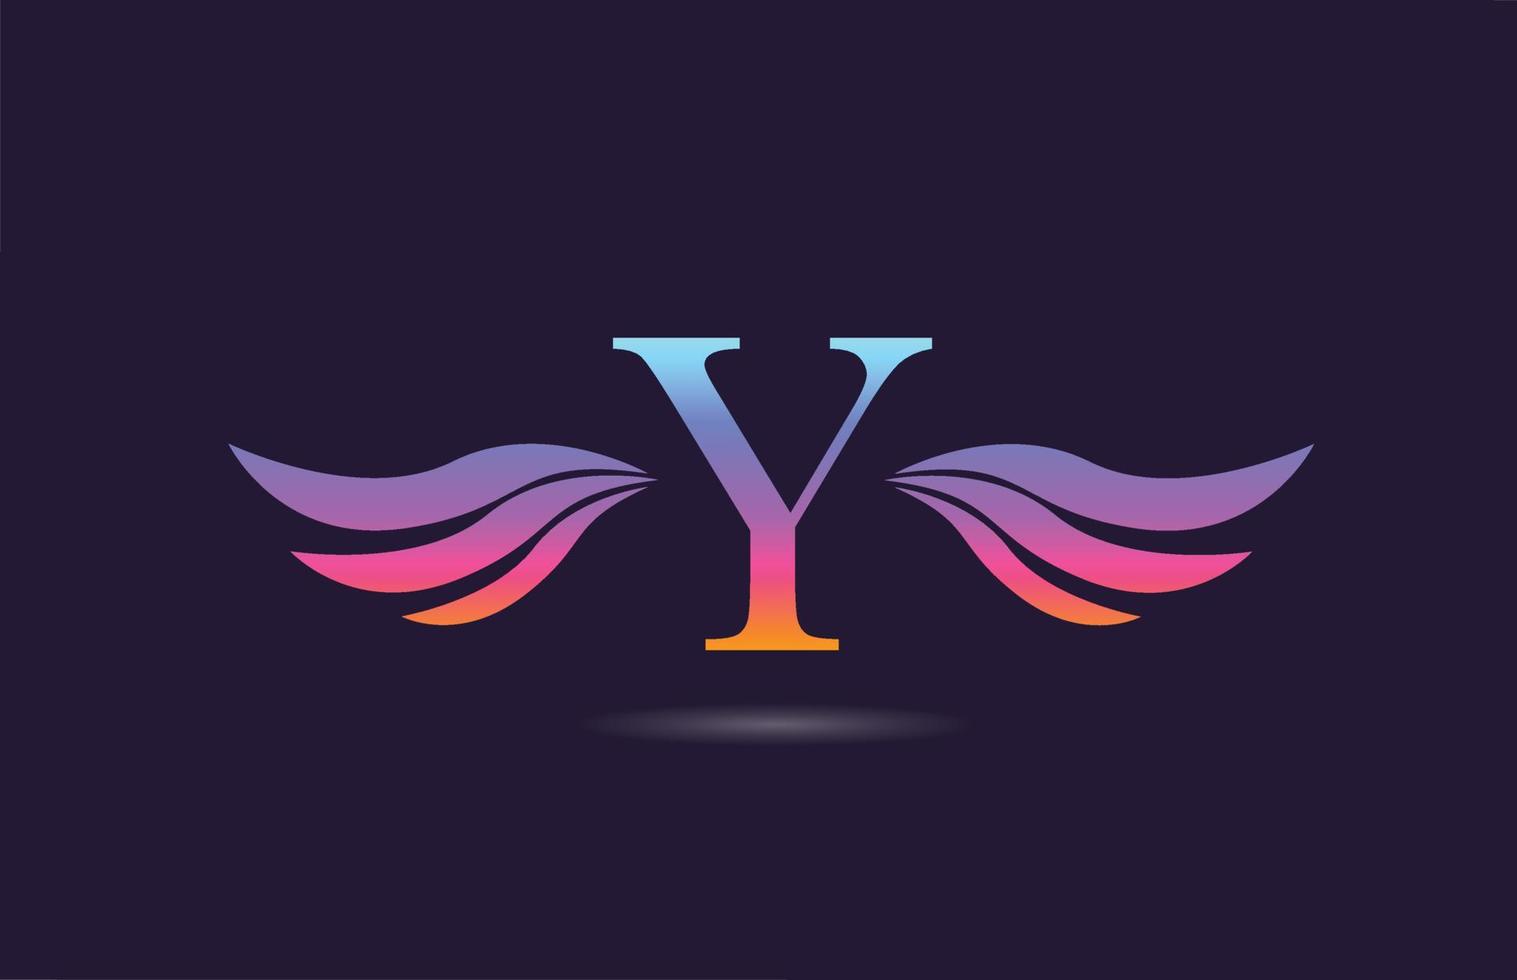 création colorée d'icône de logo de lettre alphabet y avec des ailes. modèle créatif pour entreprise et entreprise en jaune rose vecteur